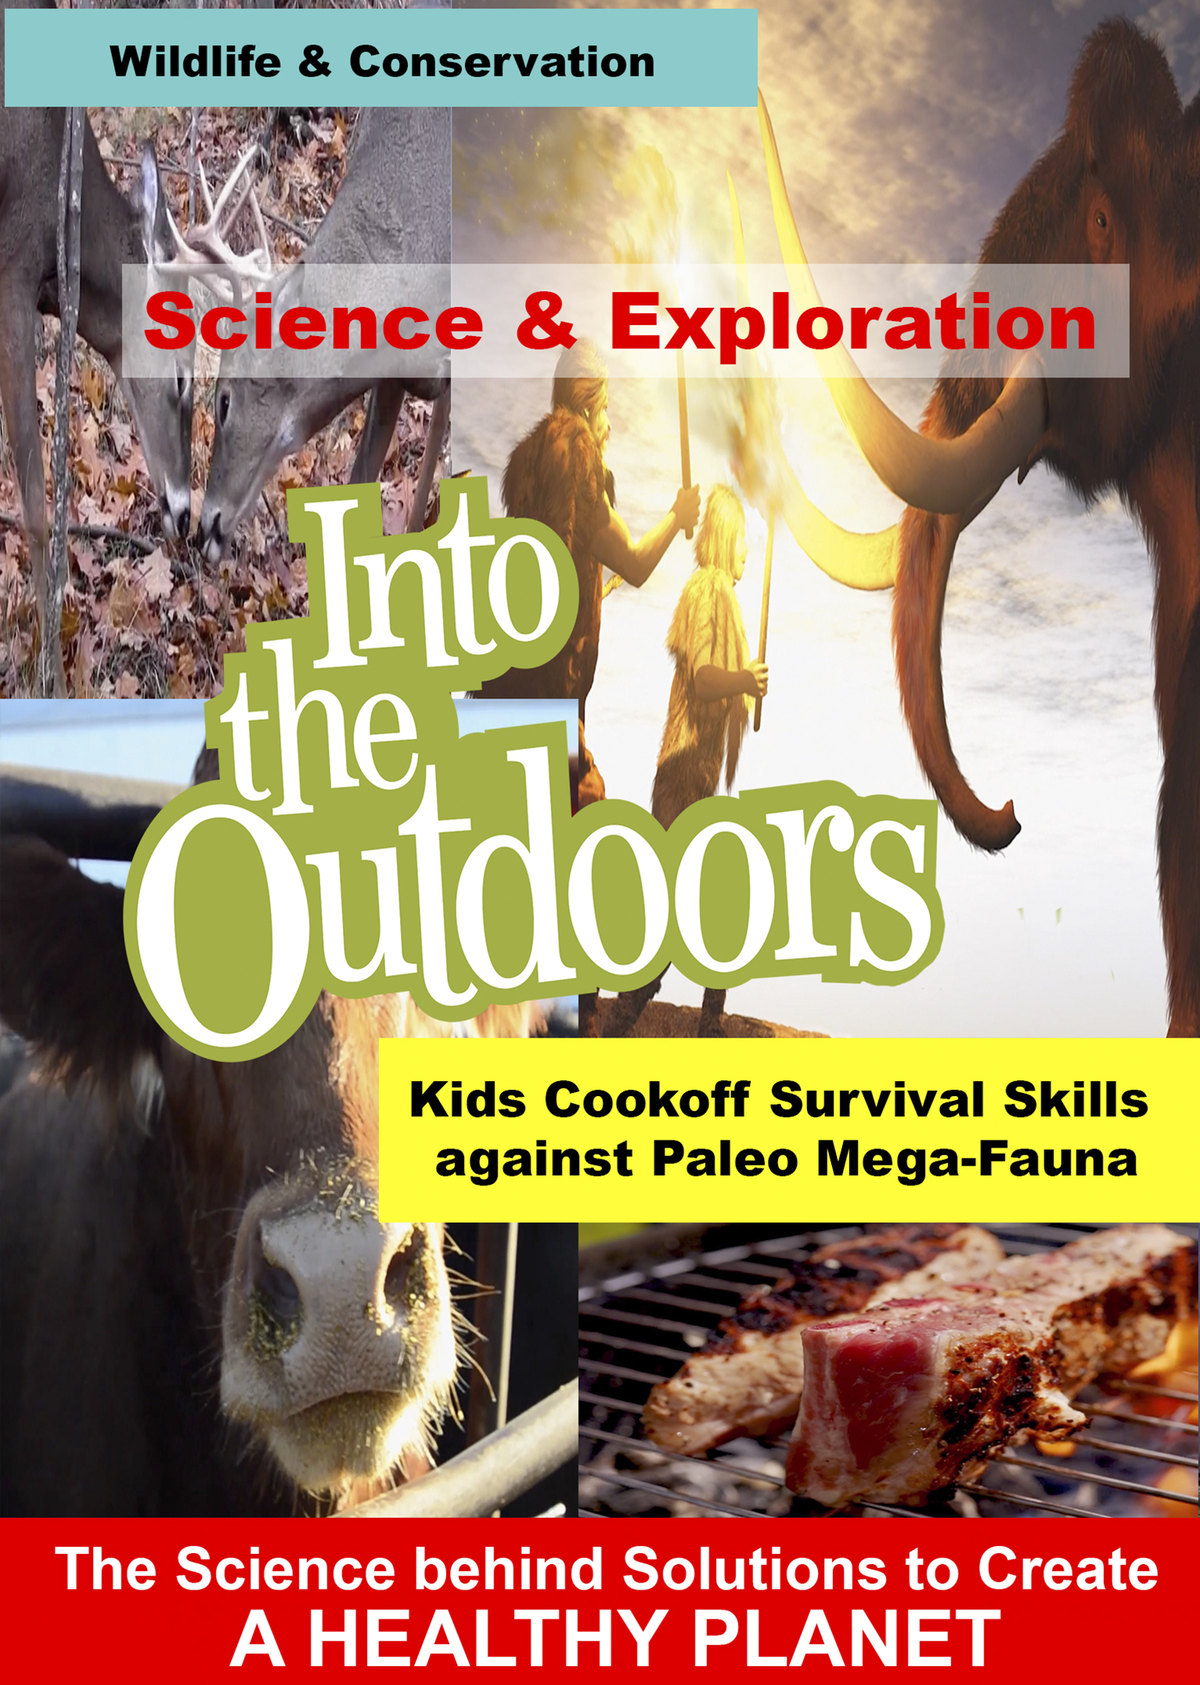 K5004 - Kids Cookoff Survival Skills against Paleo Mega-Fauna